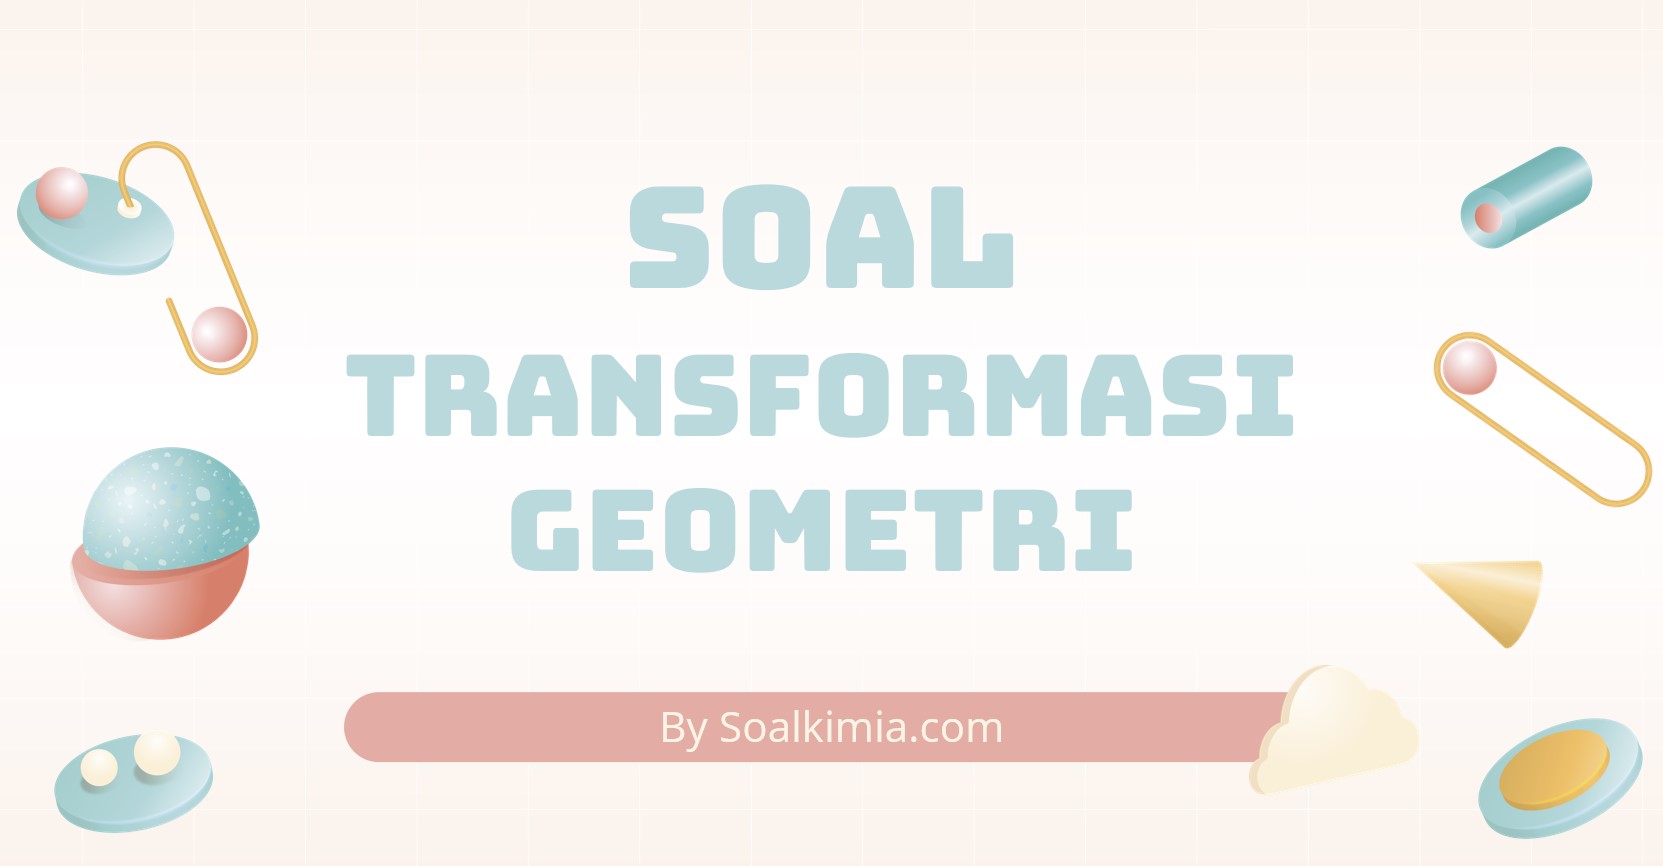 Soal Transformasi Geometri